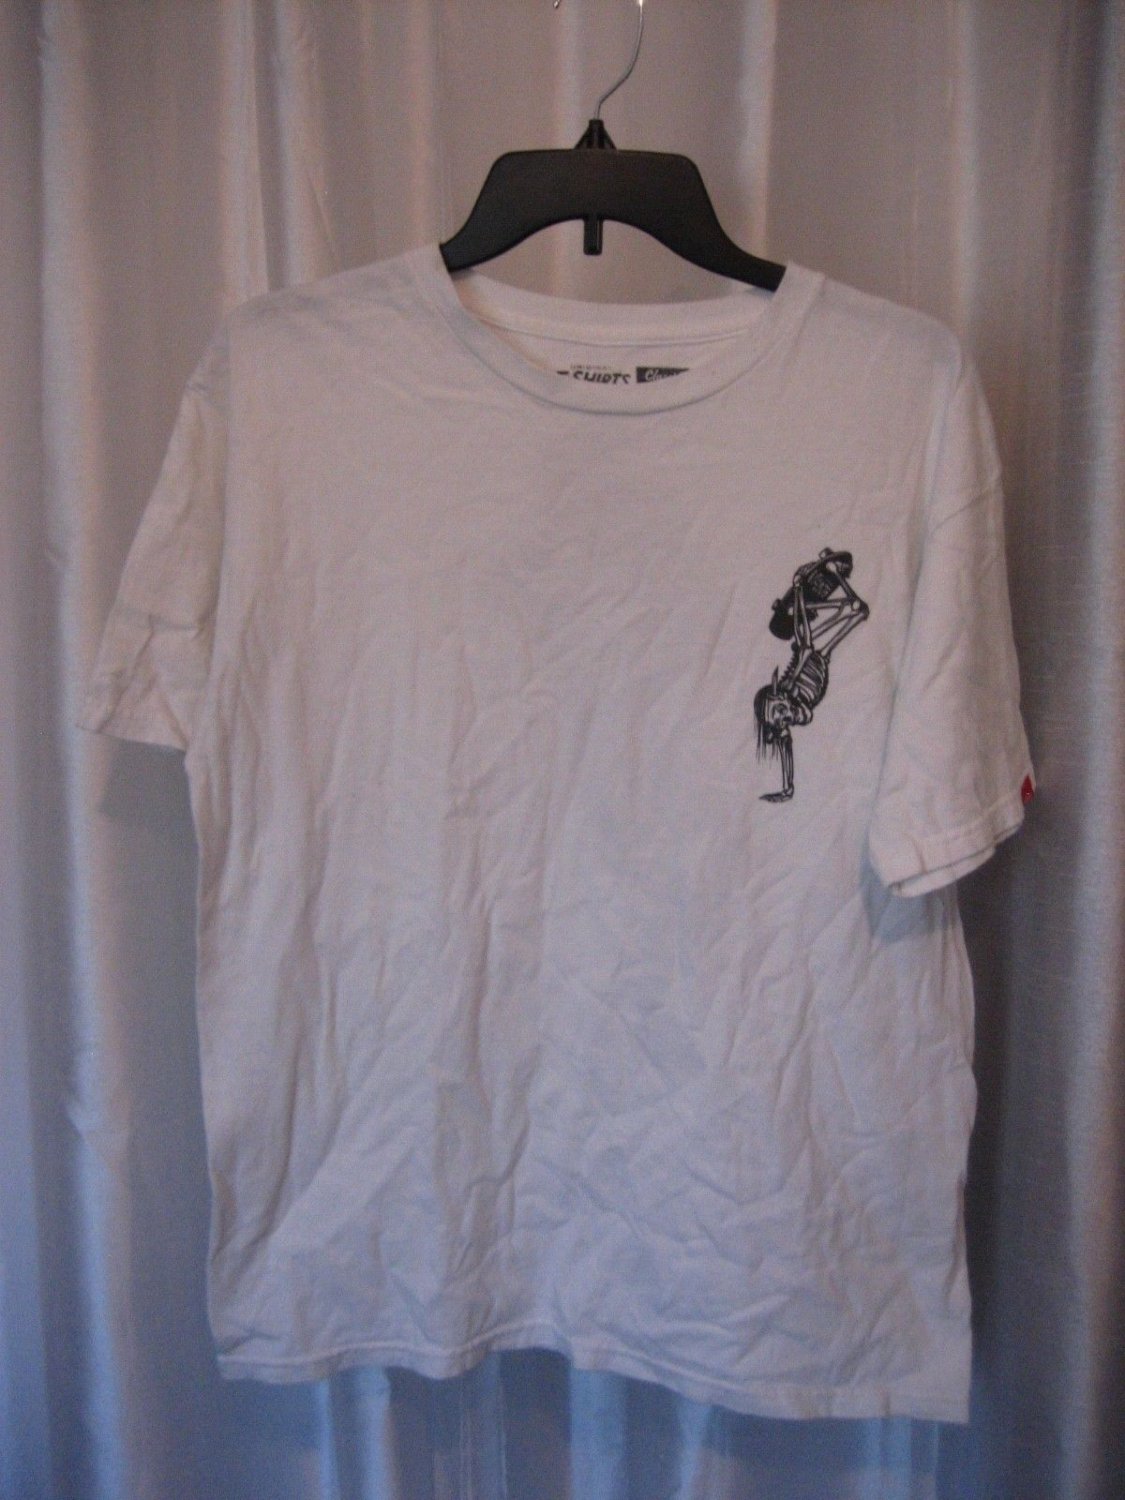 Vans Classic Men's White Graphic T Shirt Skeleton Skateboarding Sz M ...